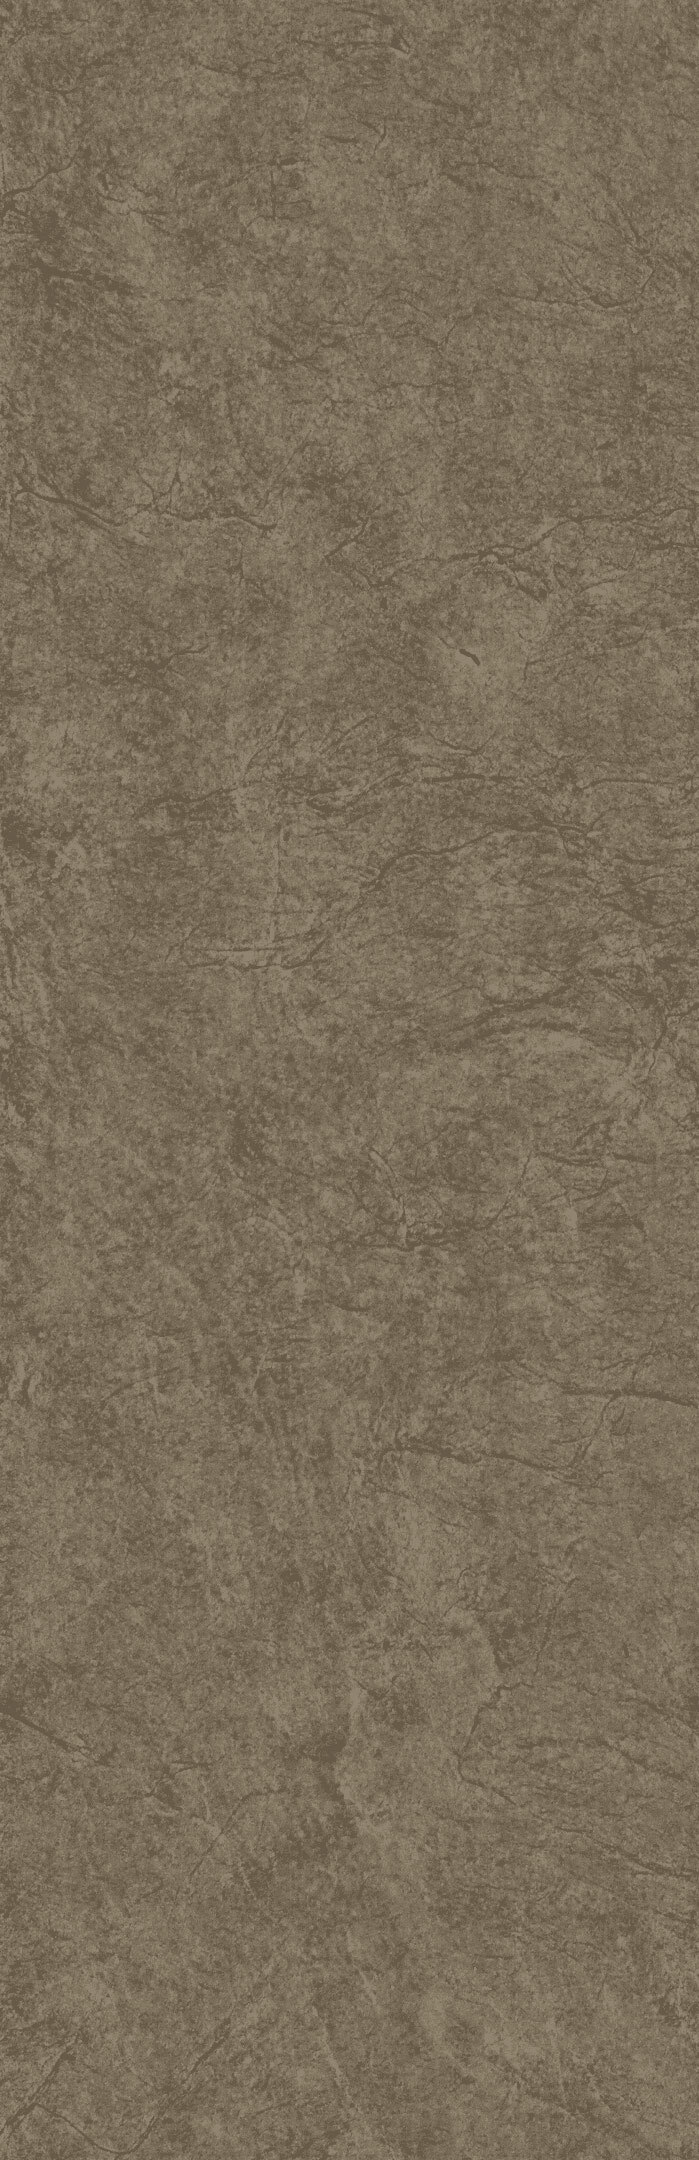 Плитка облицовочная Нефрит Кронштадт коричневая 600x200x9 мм (10 шт.=1,2 кв.м) плитка облицовочная нефрит кронштадт бежевая 60х20 см 10 шт 1 2 кв м